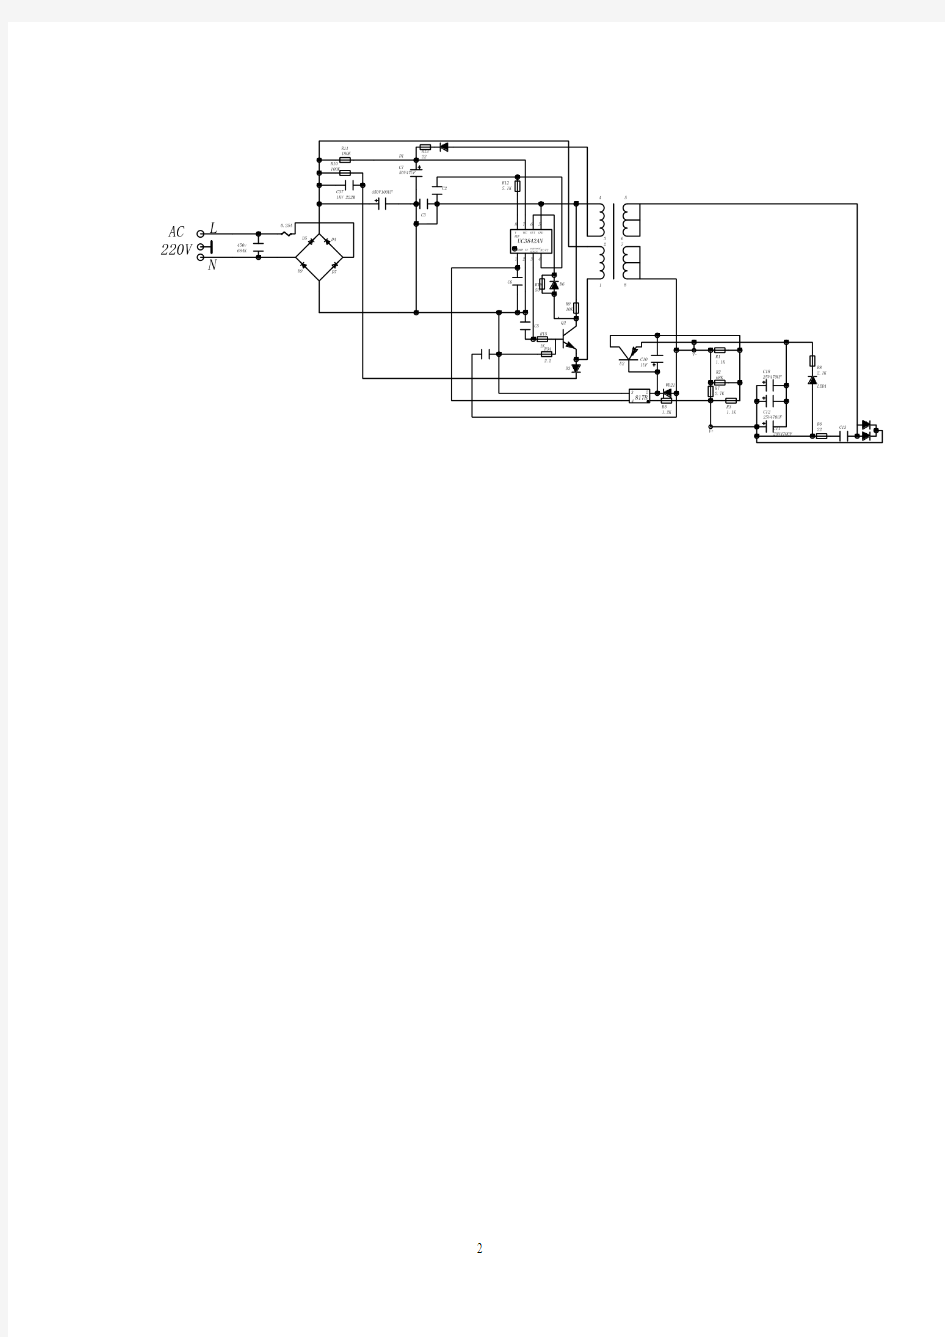 联想笔记本电源适配器PA-1900-05维修实例(图)